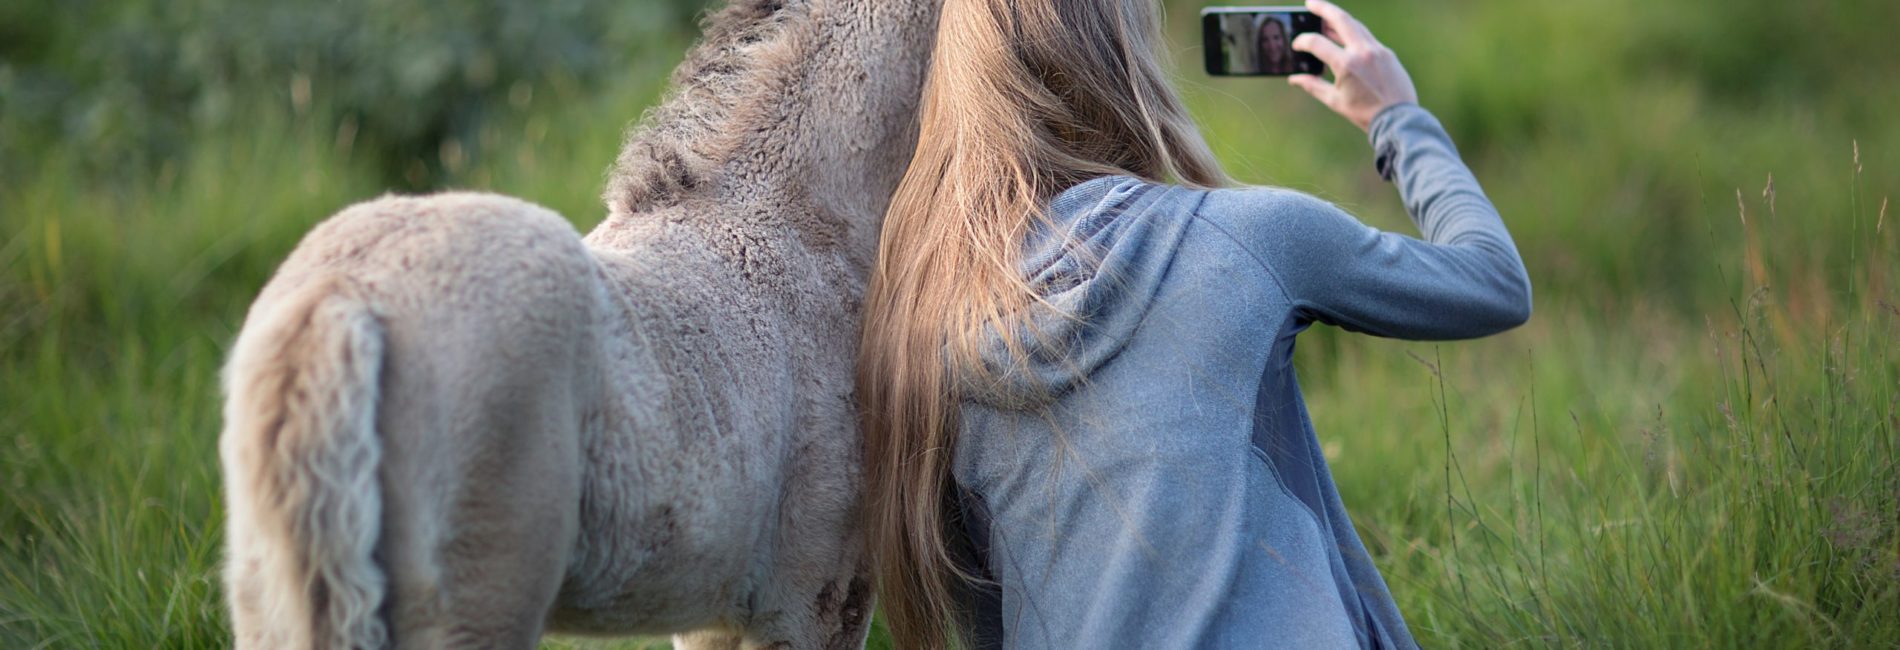 3 Tipps für perfekte Pferdefotos mit dem Smartphone